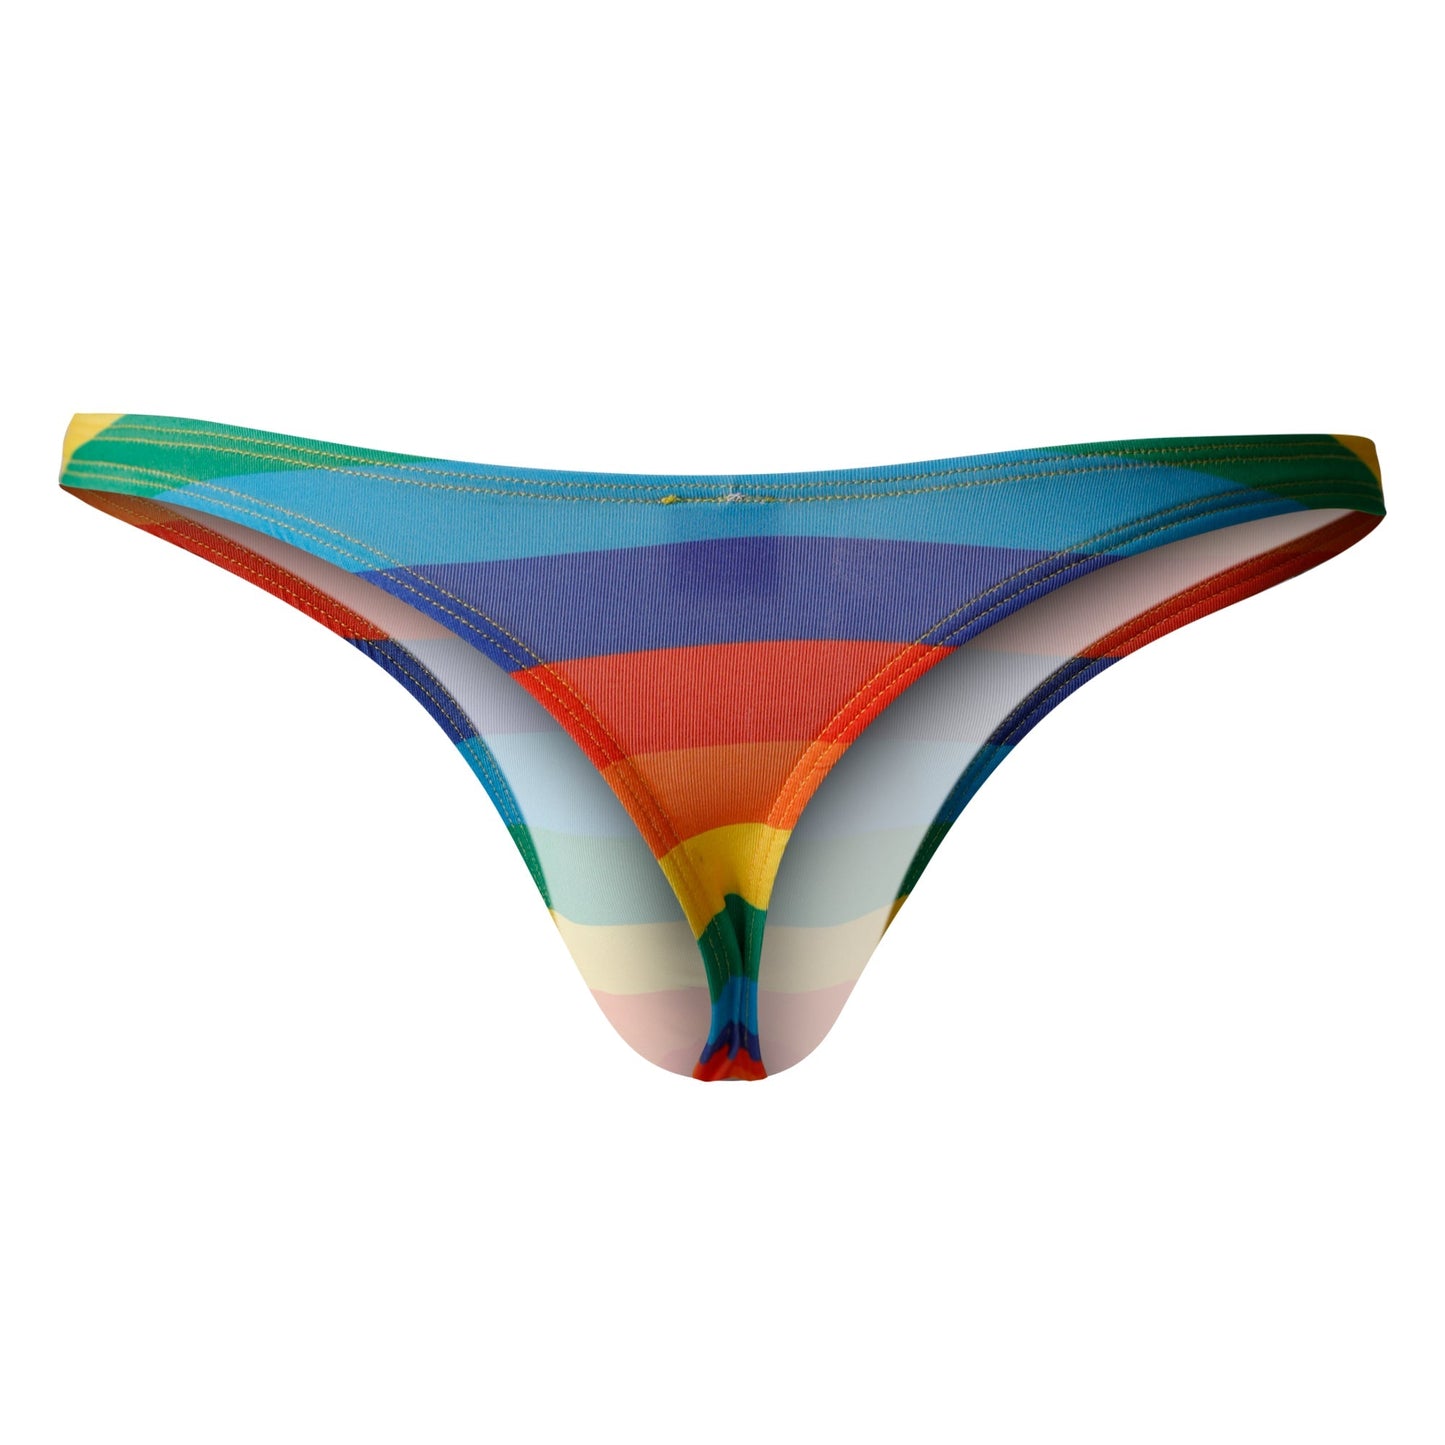 CUT4MEN - C4M01 - Low Brief Bikini Men Underwear - Rainbow - 4 Sizes - 1 Piece